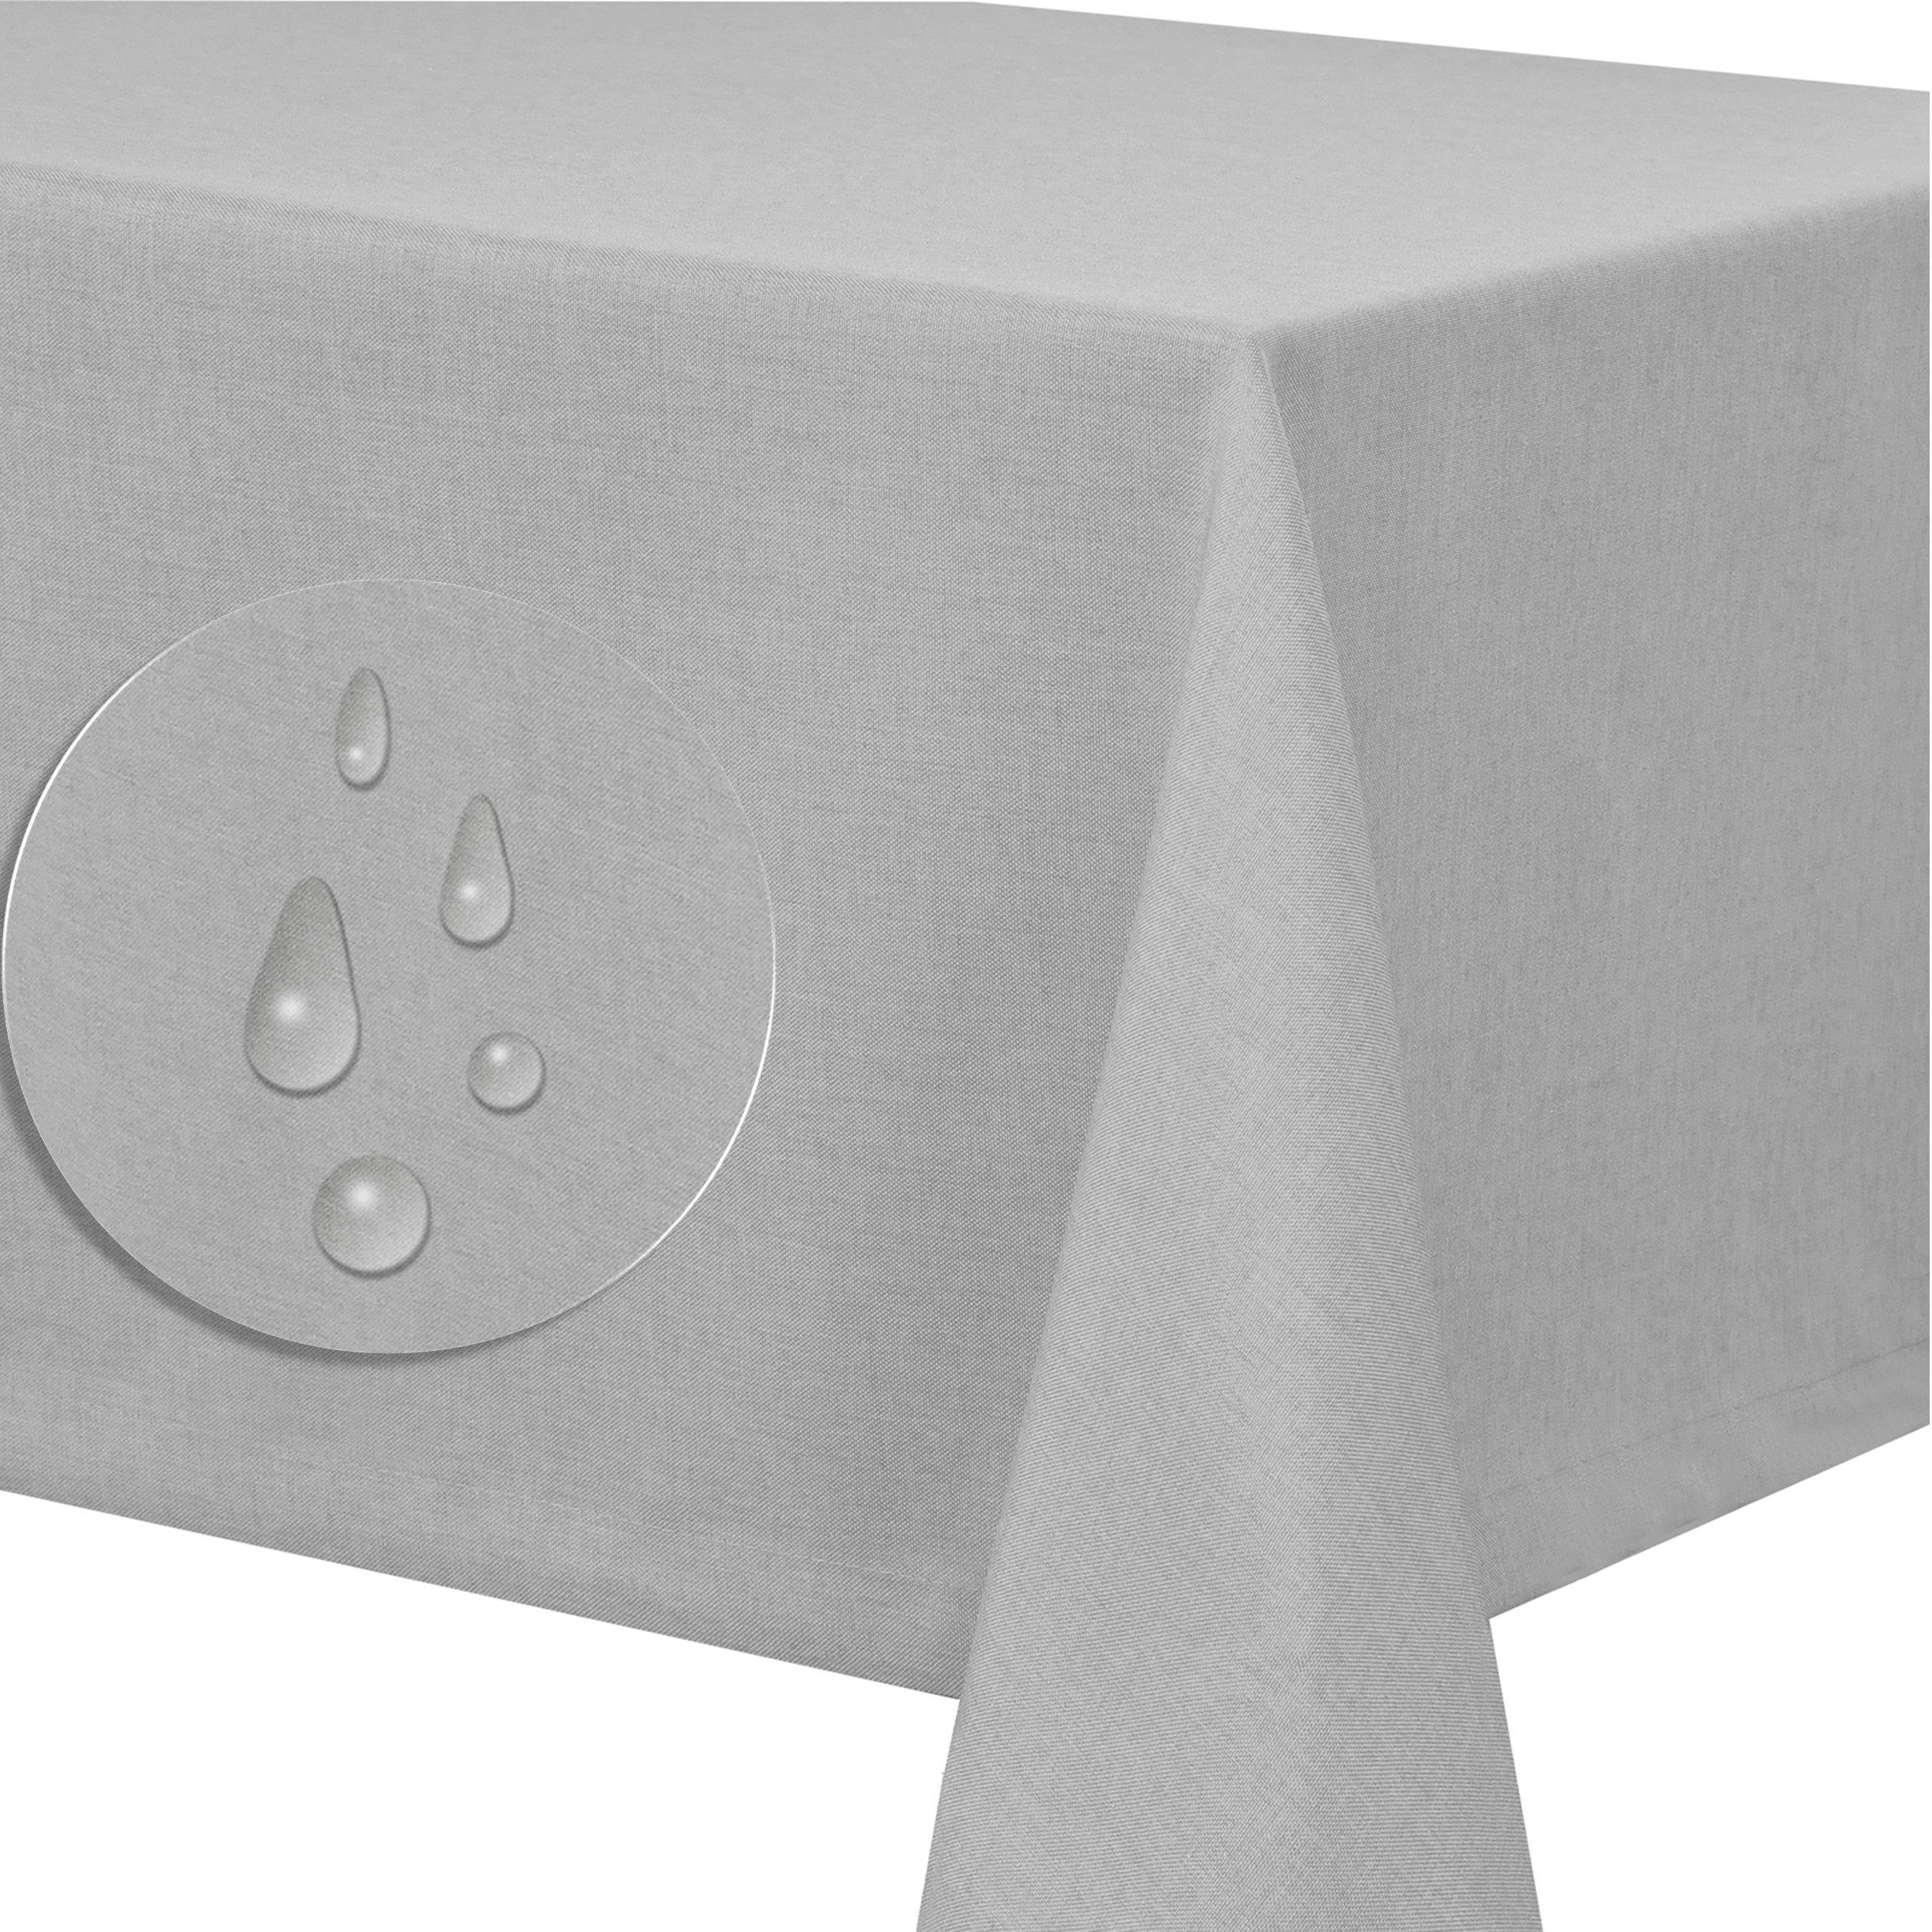 Fiora Tischdecke Leinenstruktur Tischdecke Tischtuch schmutzabweisend tafeltuch Lotuseffekt pflegeleicht Optik abwaschbar Leinen